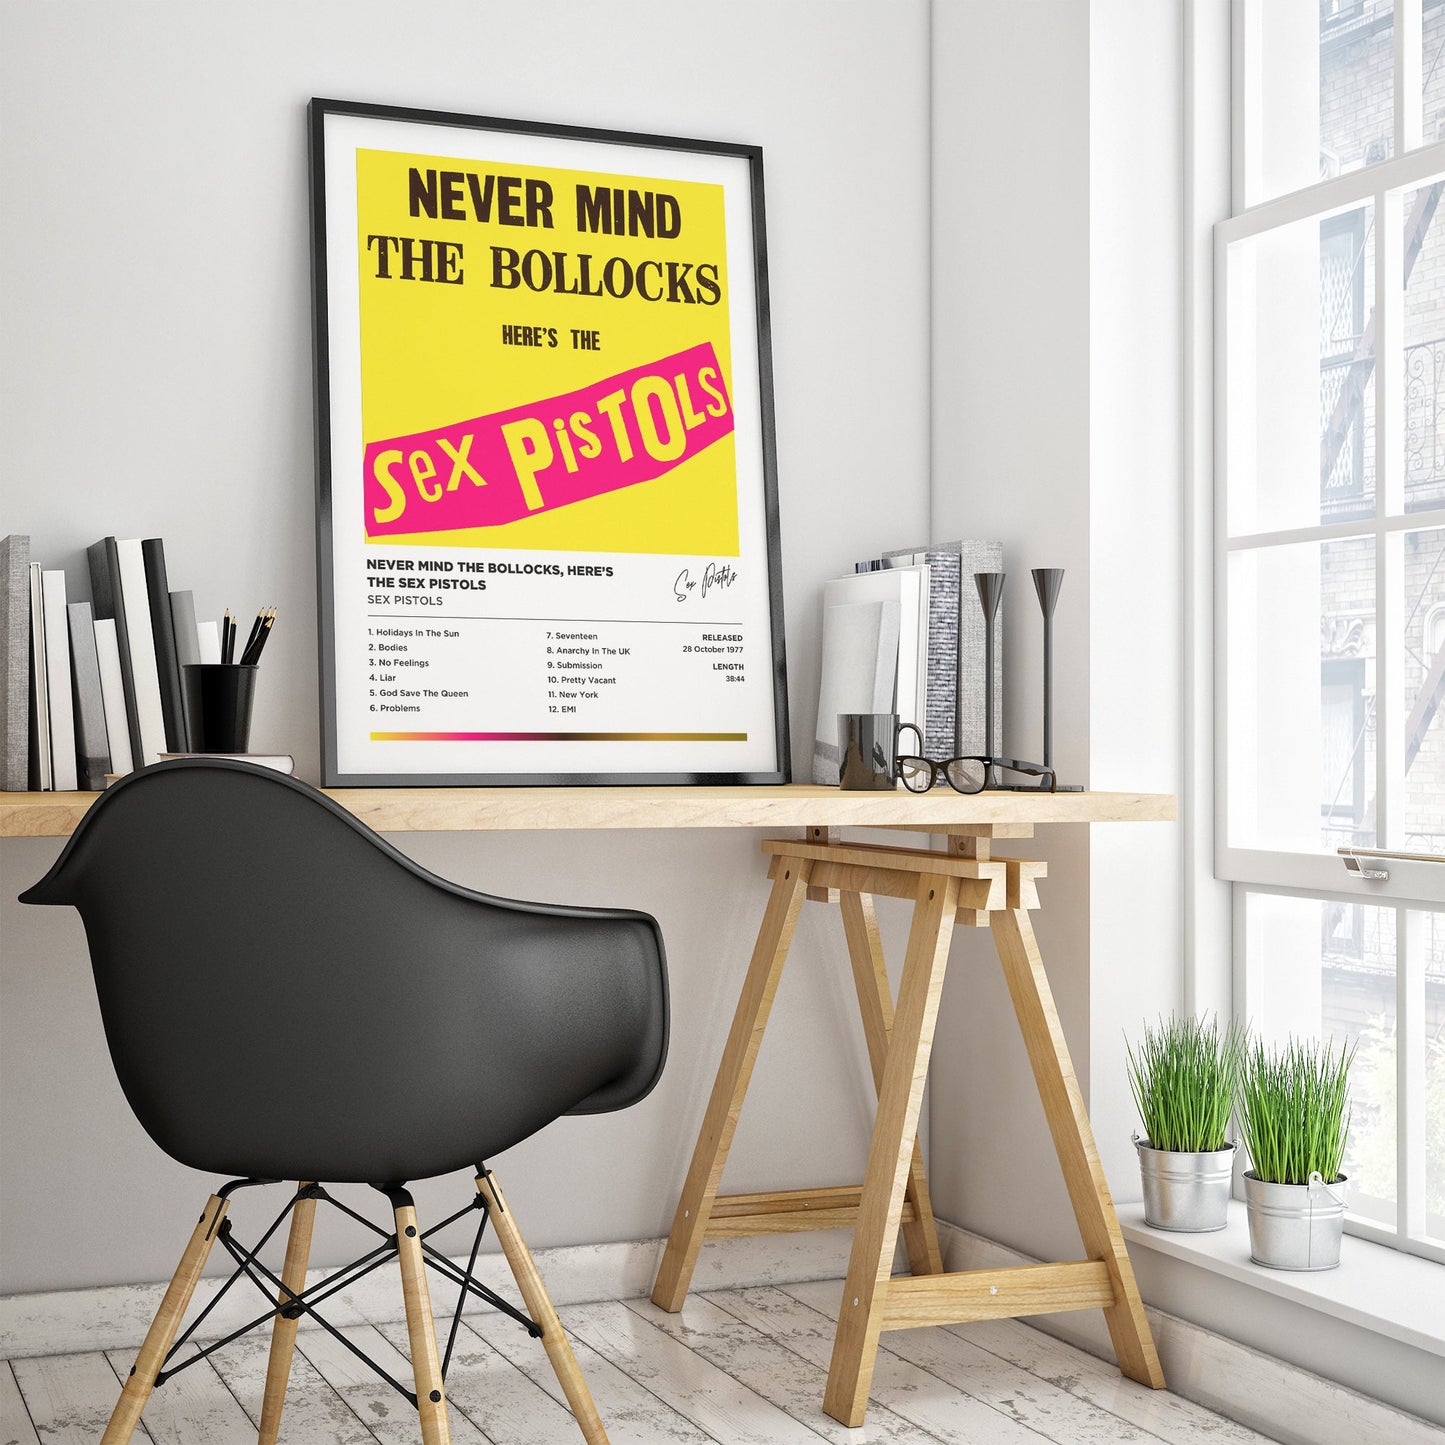 Sex Pistols - Never Mind The Bollocks Here's The Sex Pistols Framed Poster Print | Polaroid Style | Album Cover Artwork